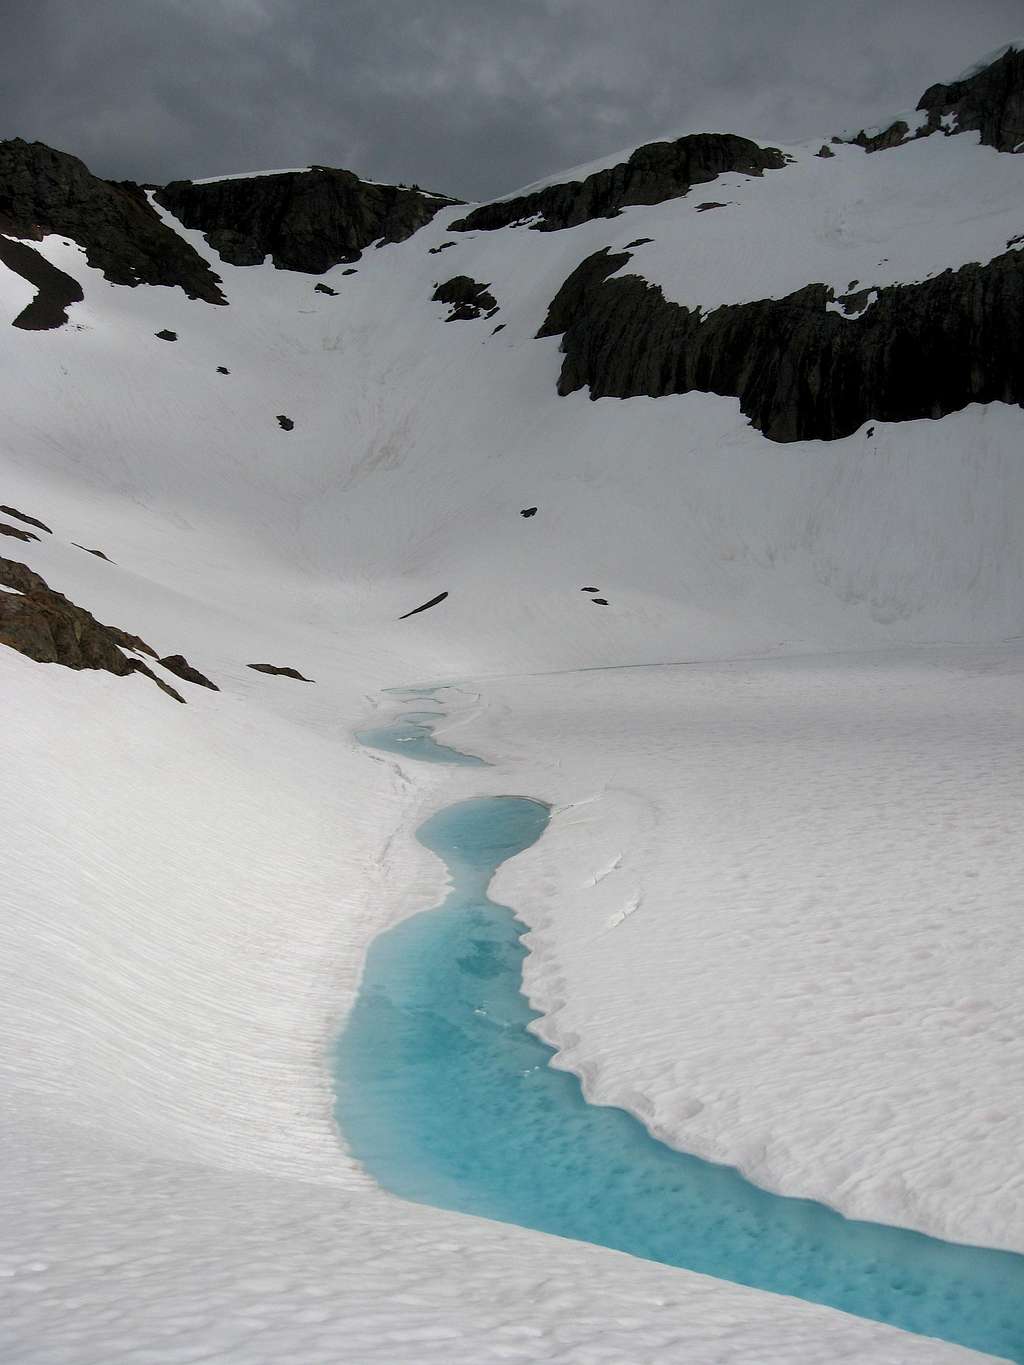 The Lake Below Jerry Glacier